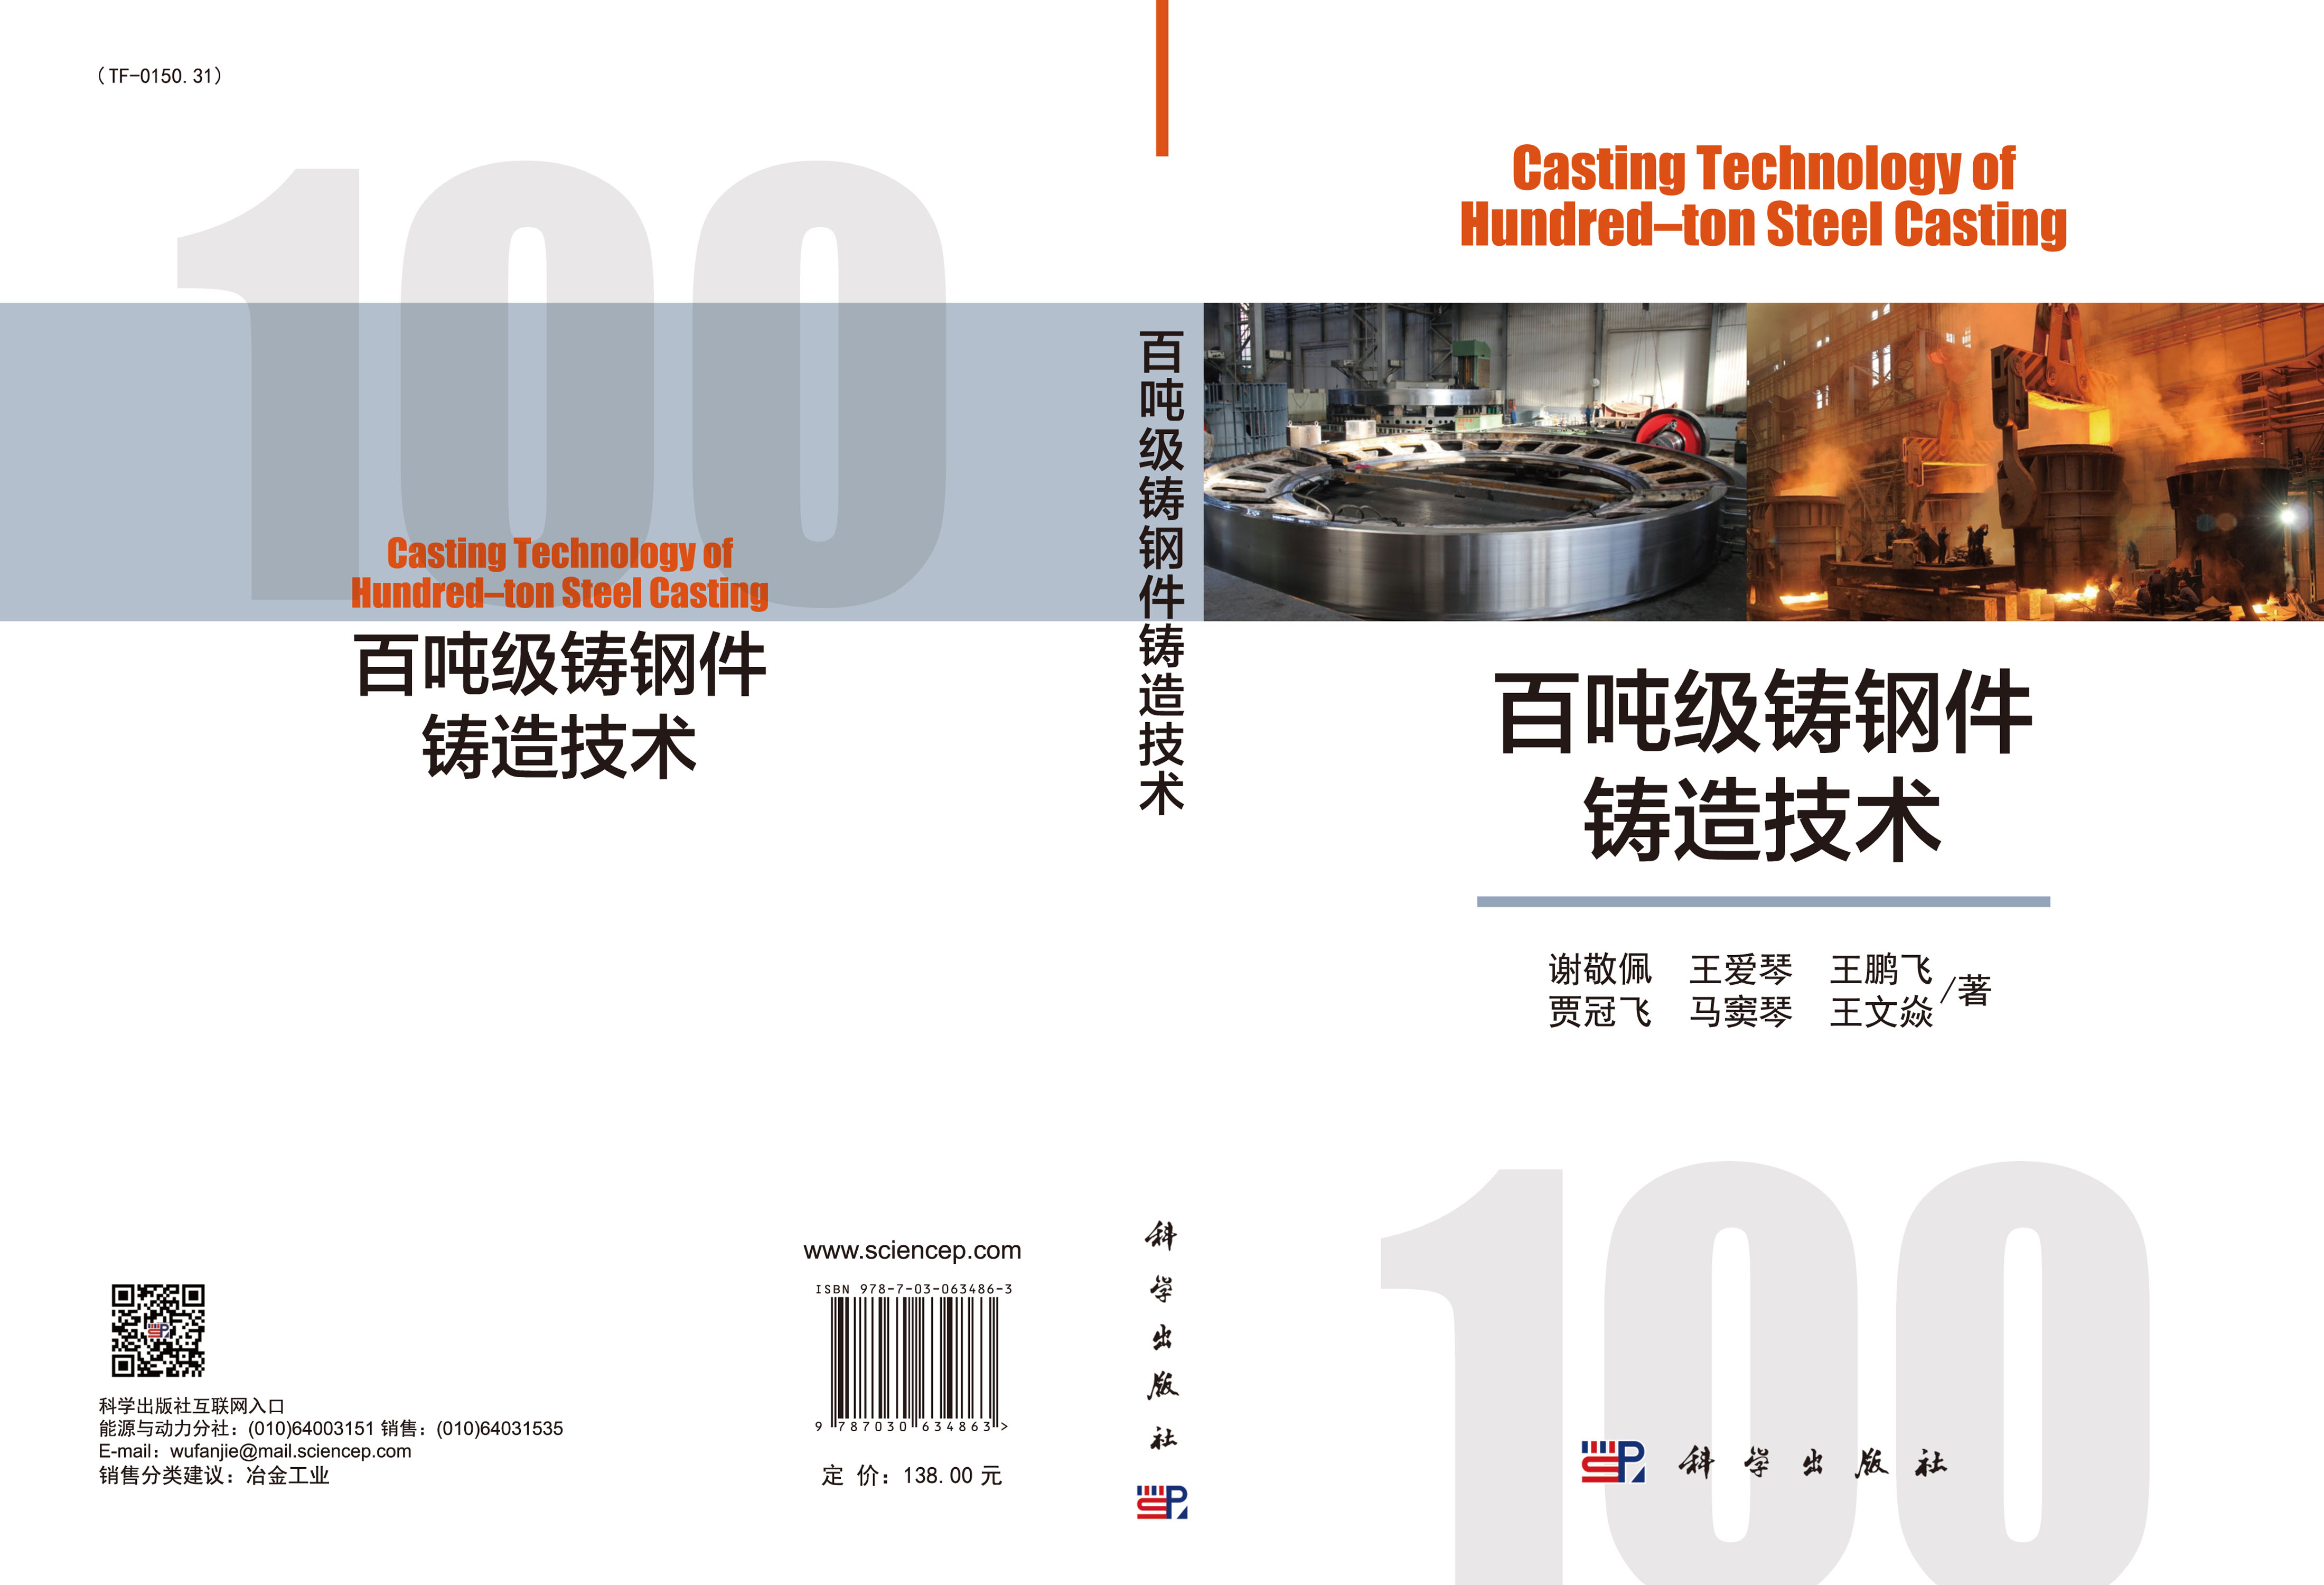 百吨级铸钢件铸造技术=Casting Technology of Hundred–ton Steel Casting